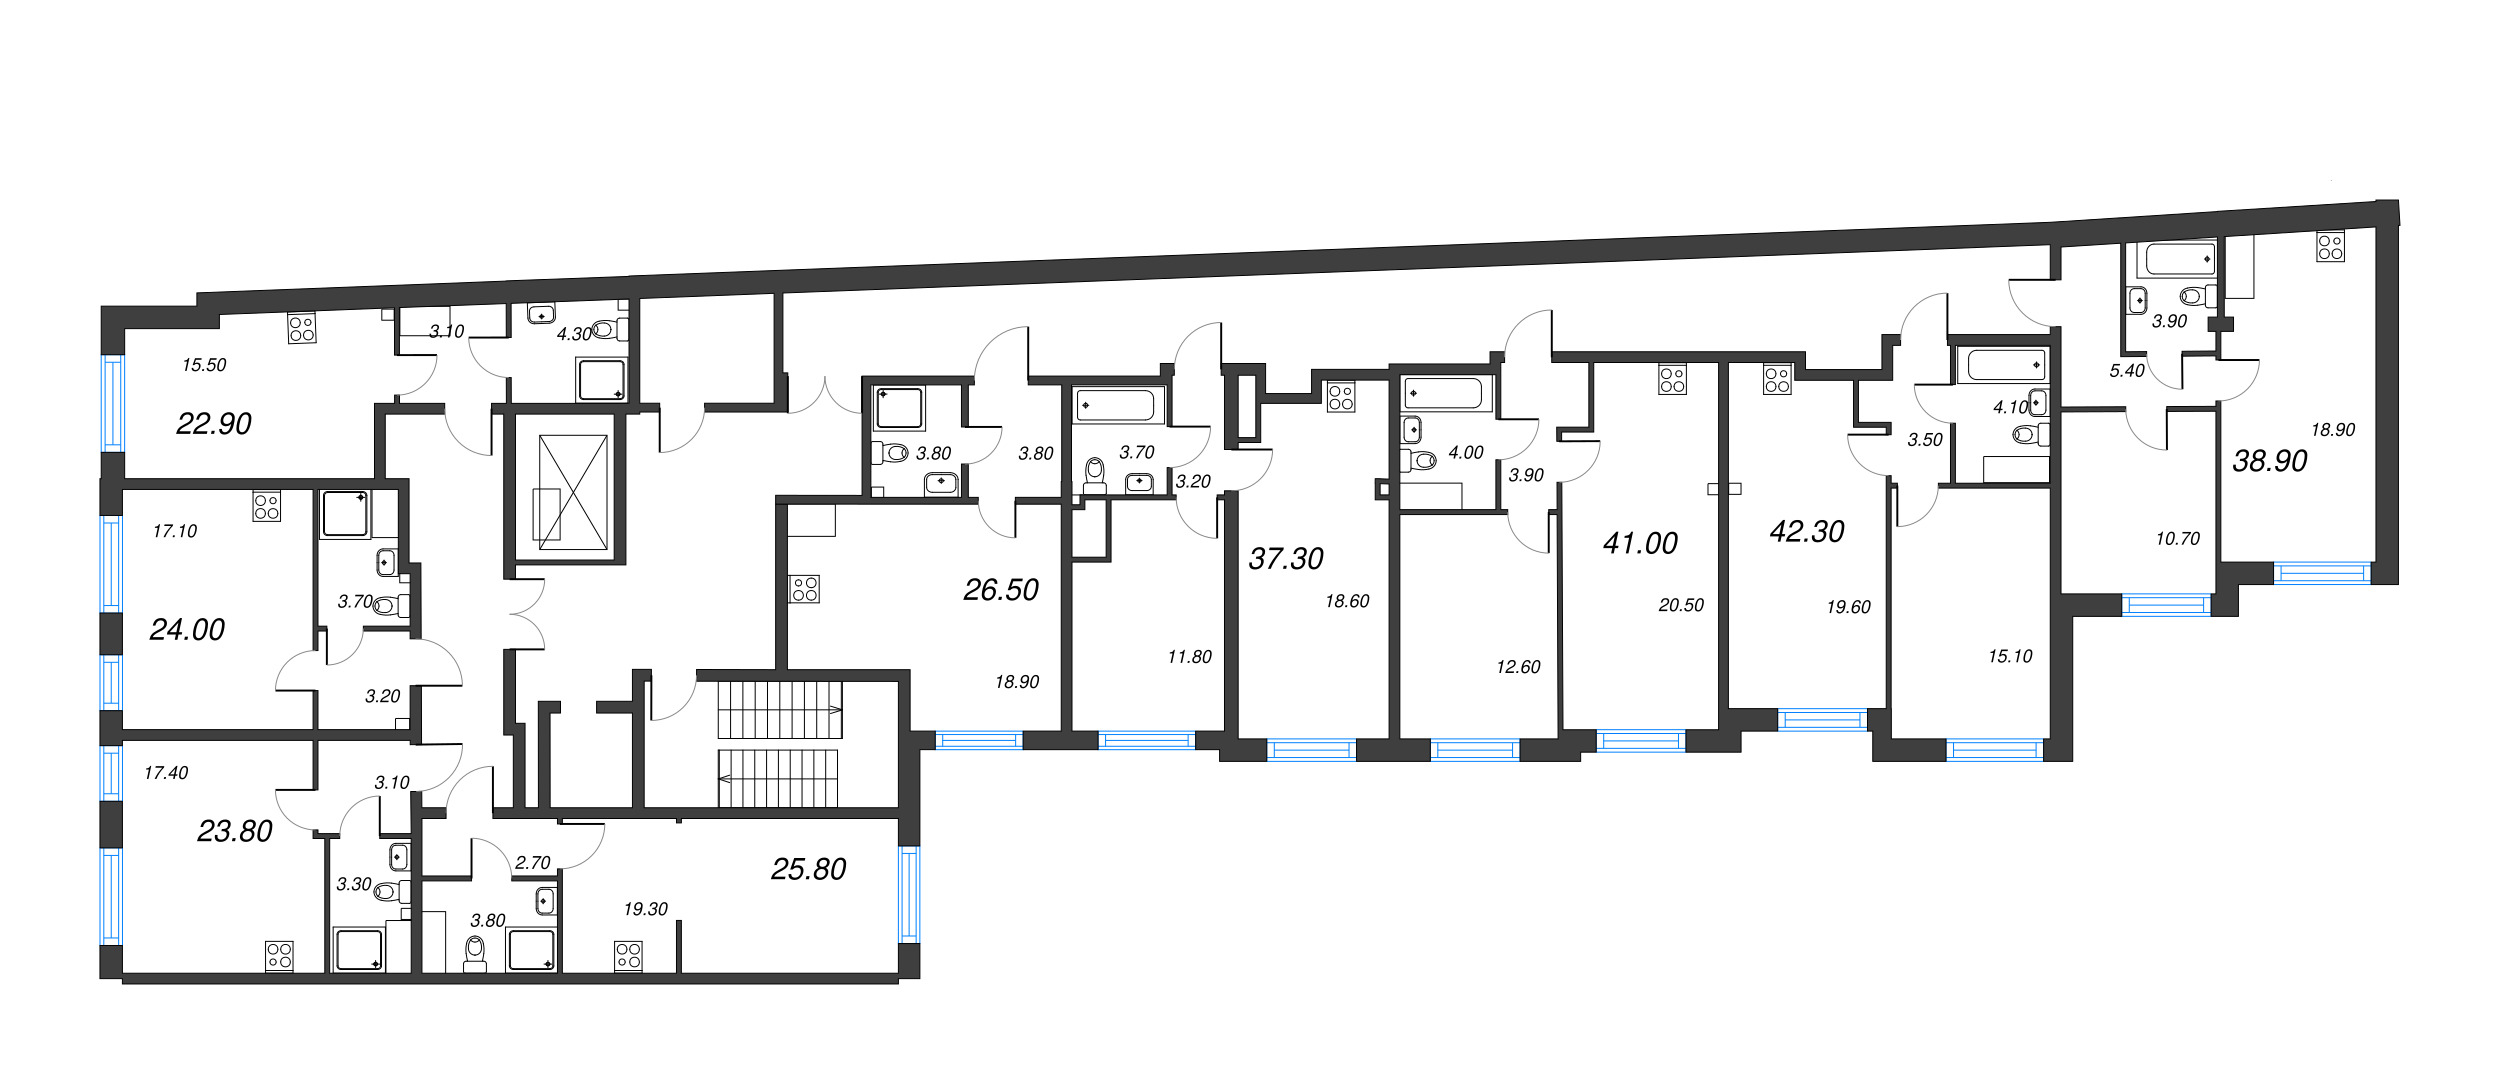 2-комнатная (Евро) квартира, 37.3 м² в ЖК "Измайловский" - планировка этажа